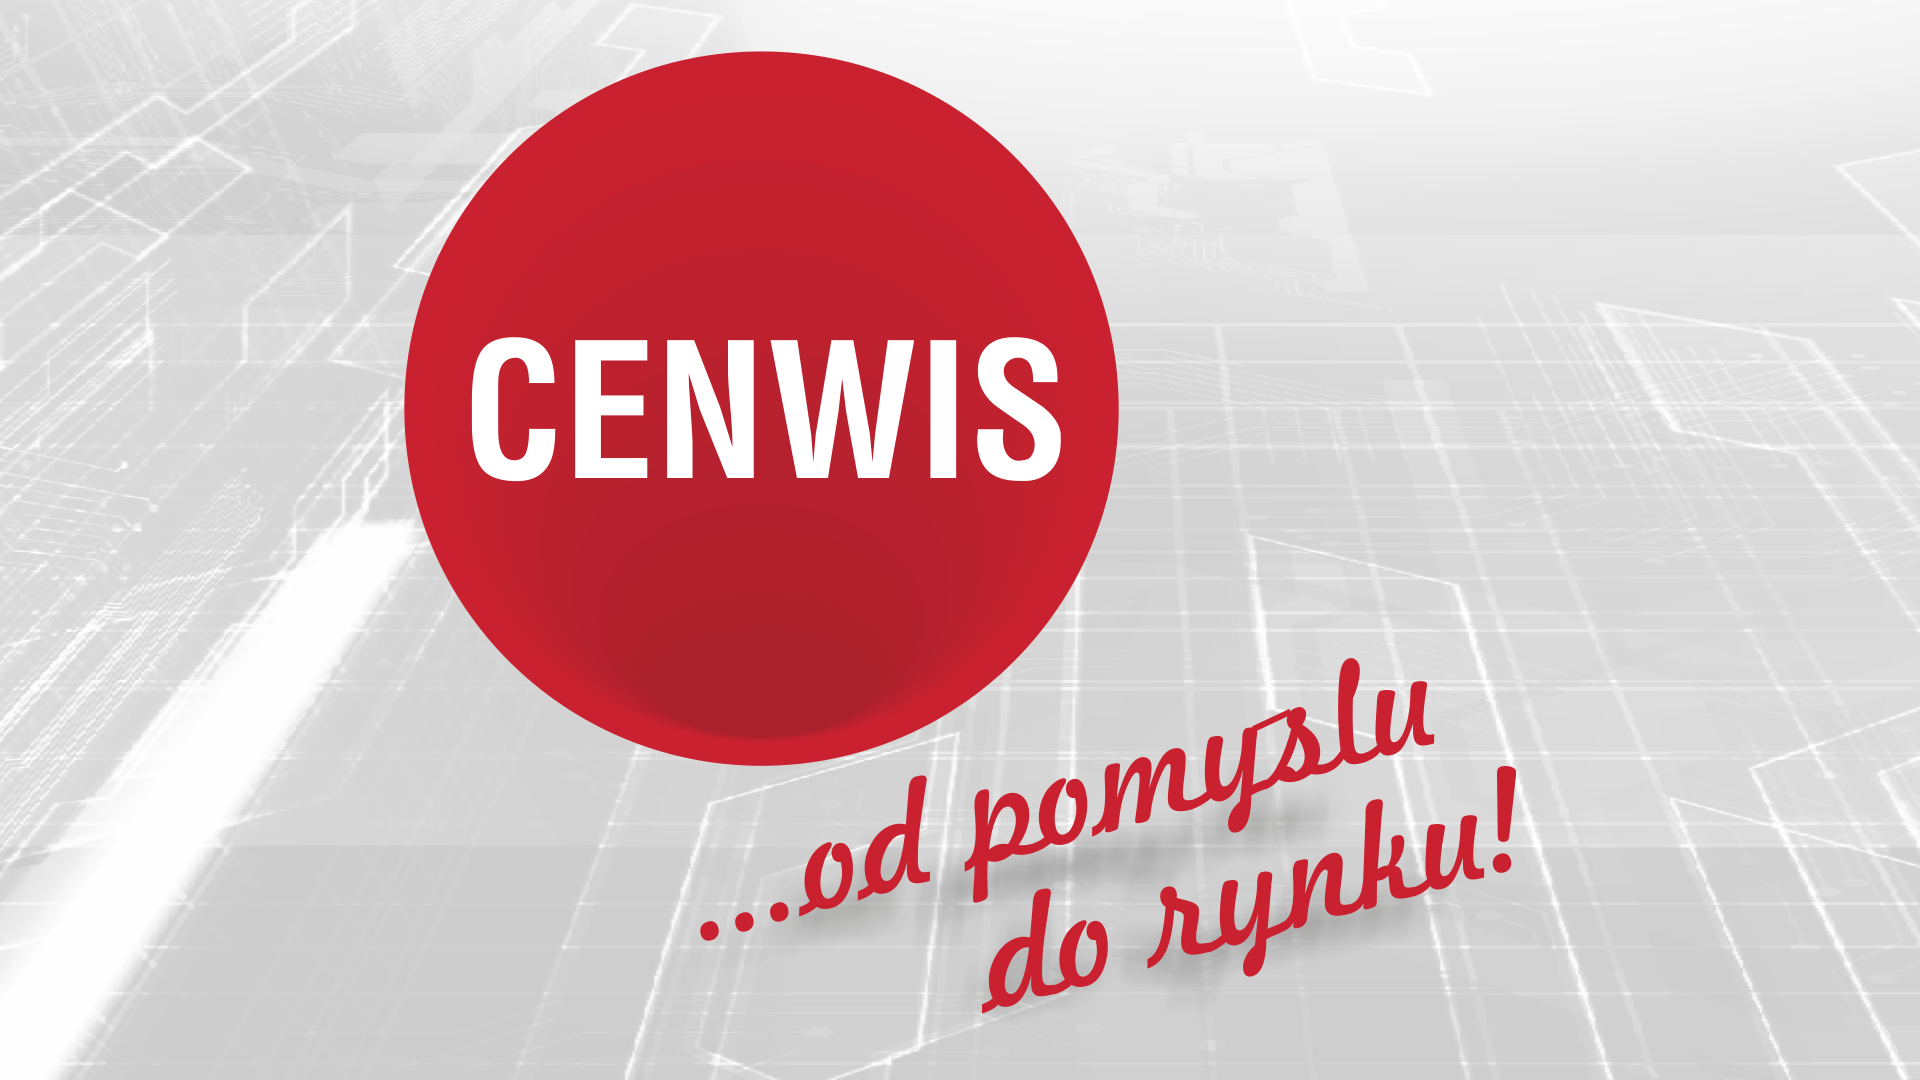 CENWIS Design Sprint